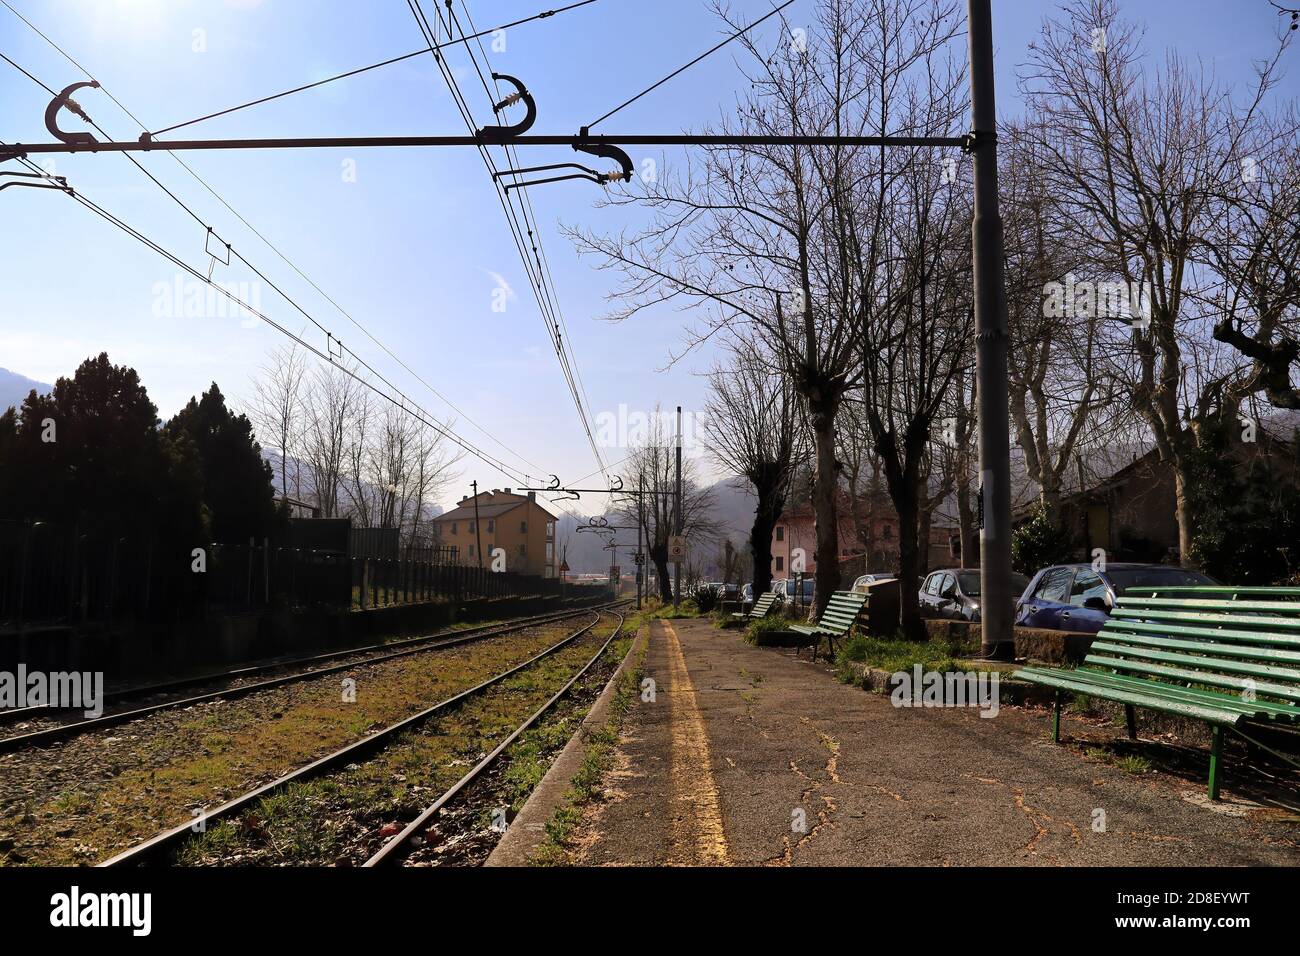 Perspektive eines leeren Bahnsteigs in einem alten Bahnhof mit Bänken und Gras, das zwischen den Gleisen gewachsen ist. Genua - Casella Bahn. Italien. Stockfoto